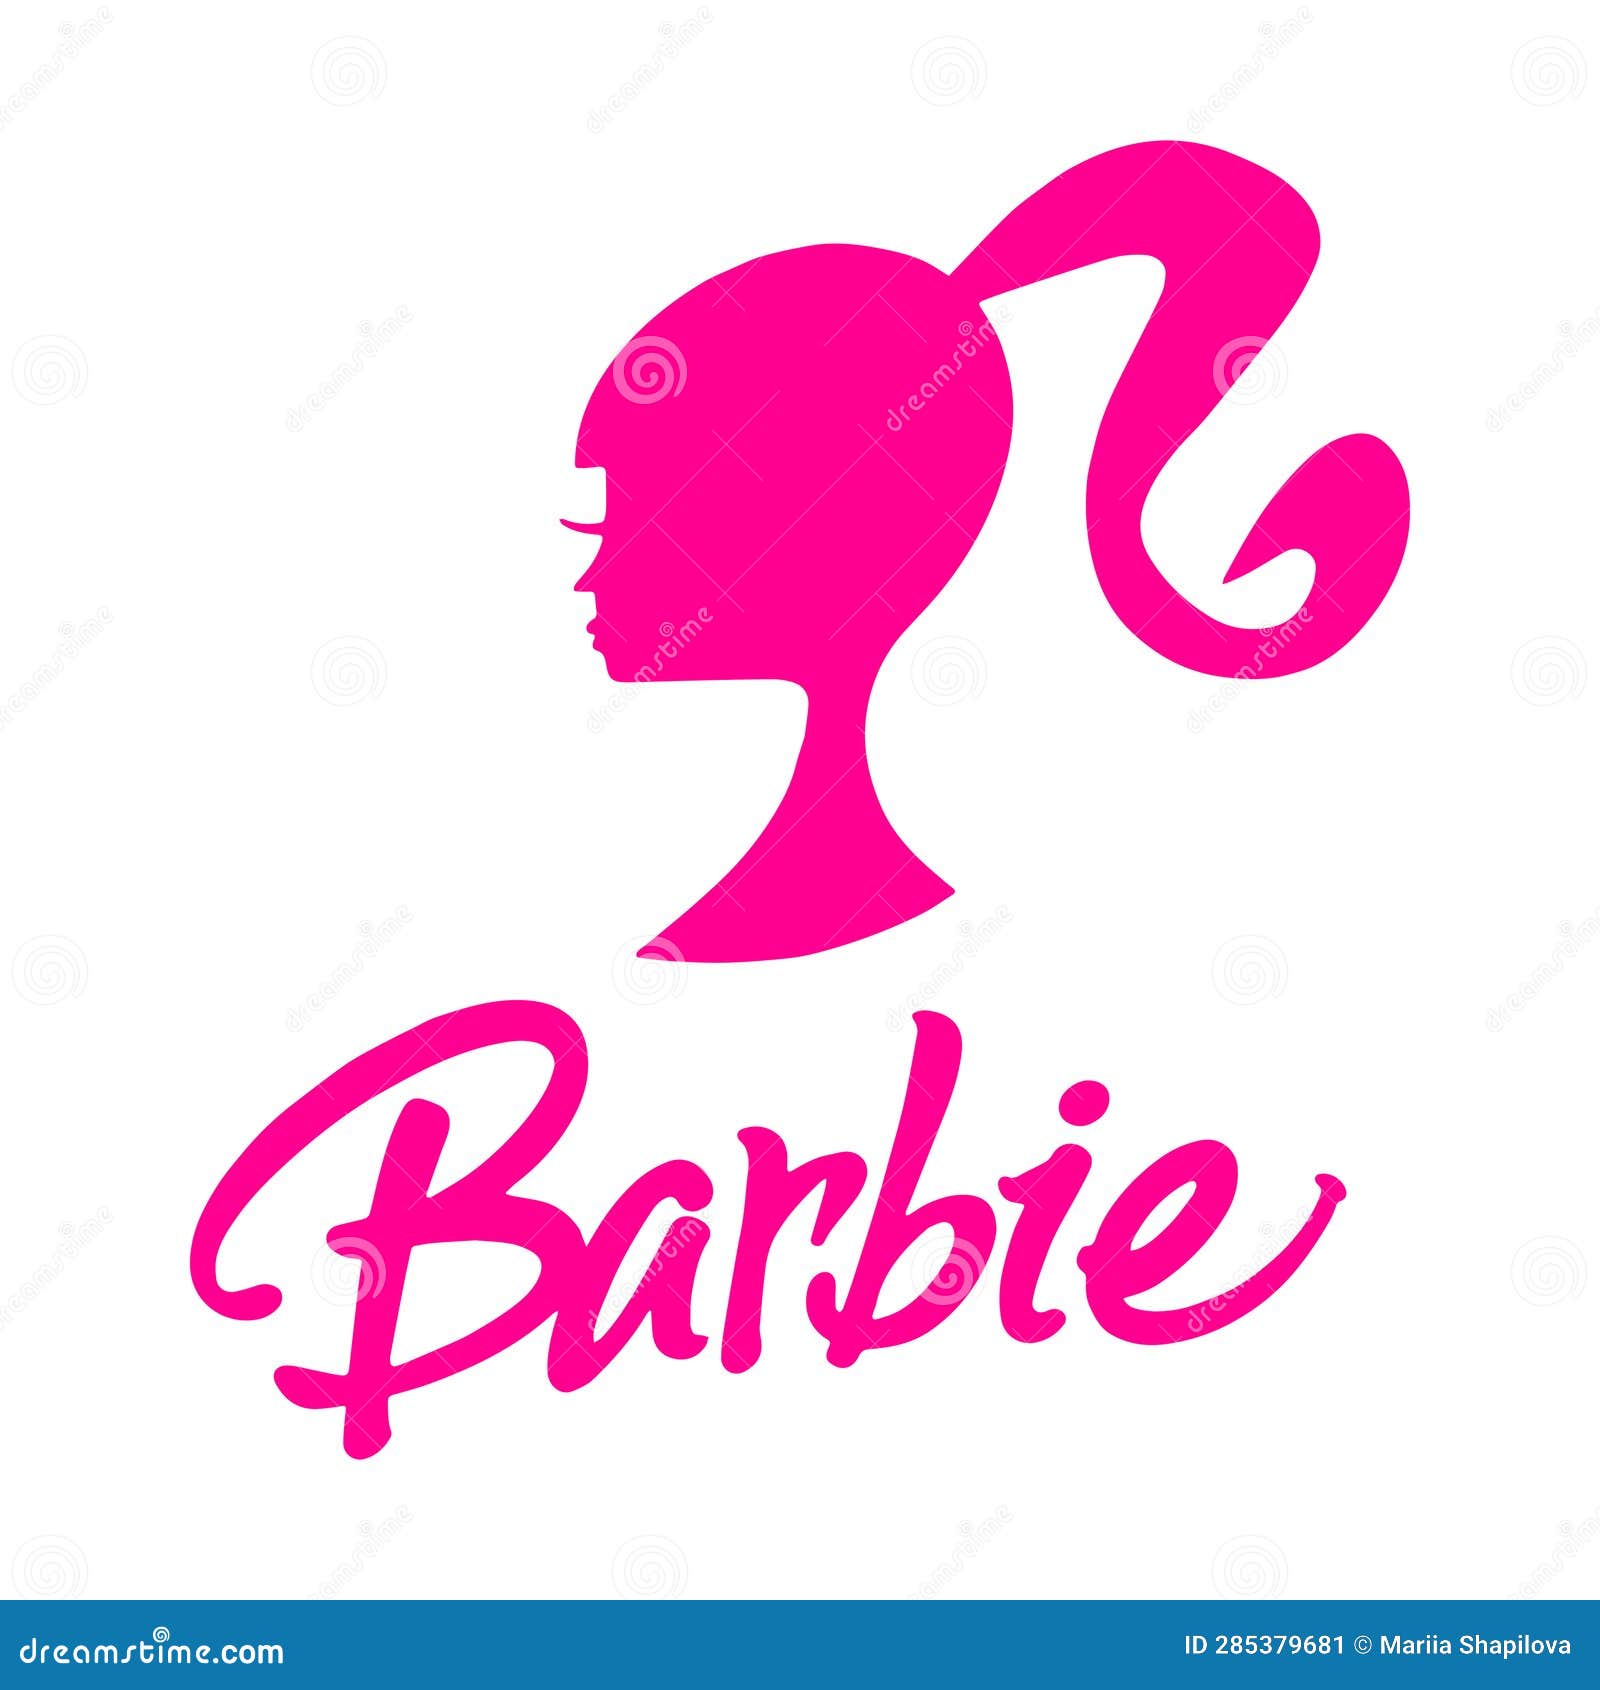 barbie-logo-png-11 | Imagens PNG